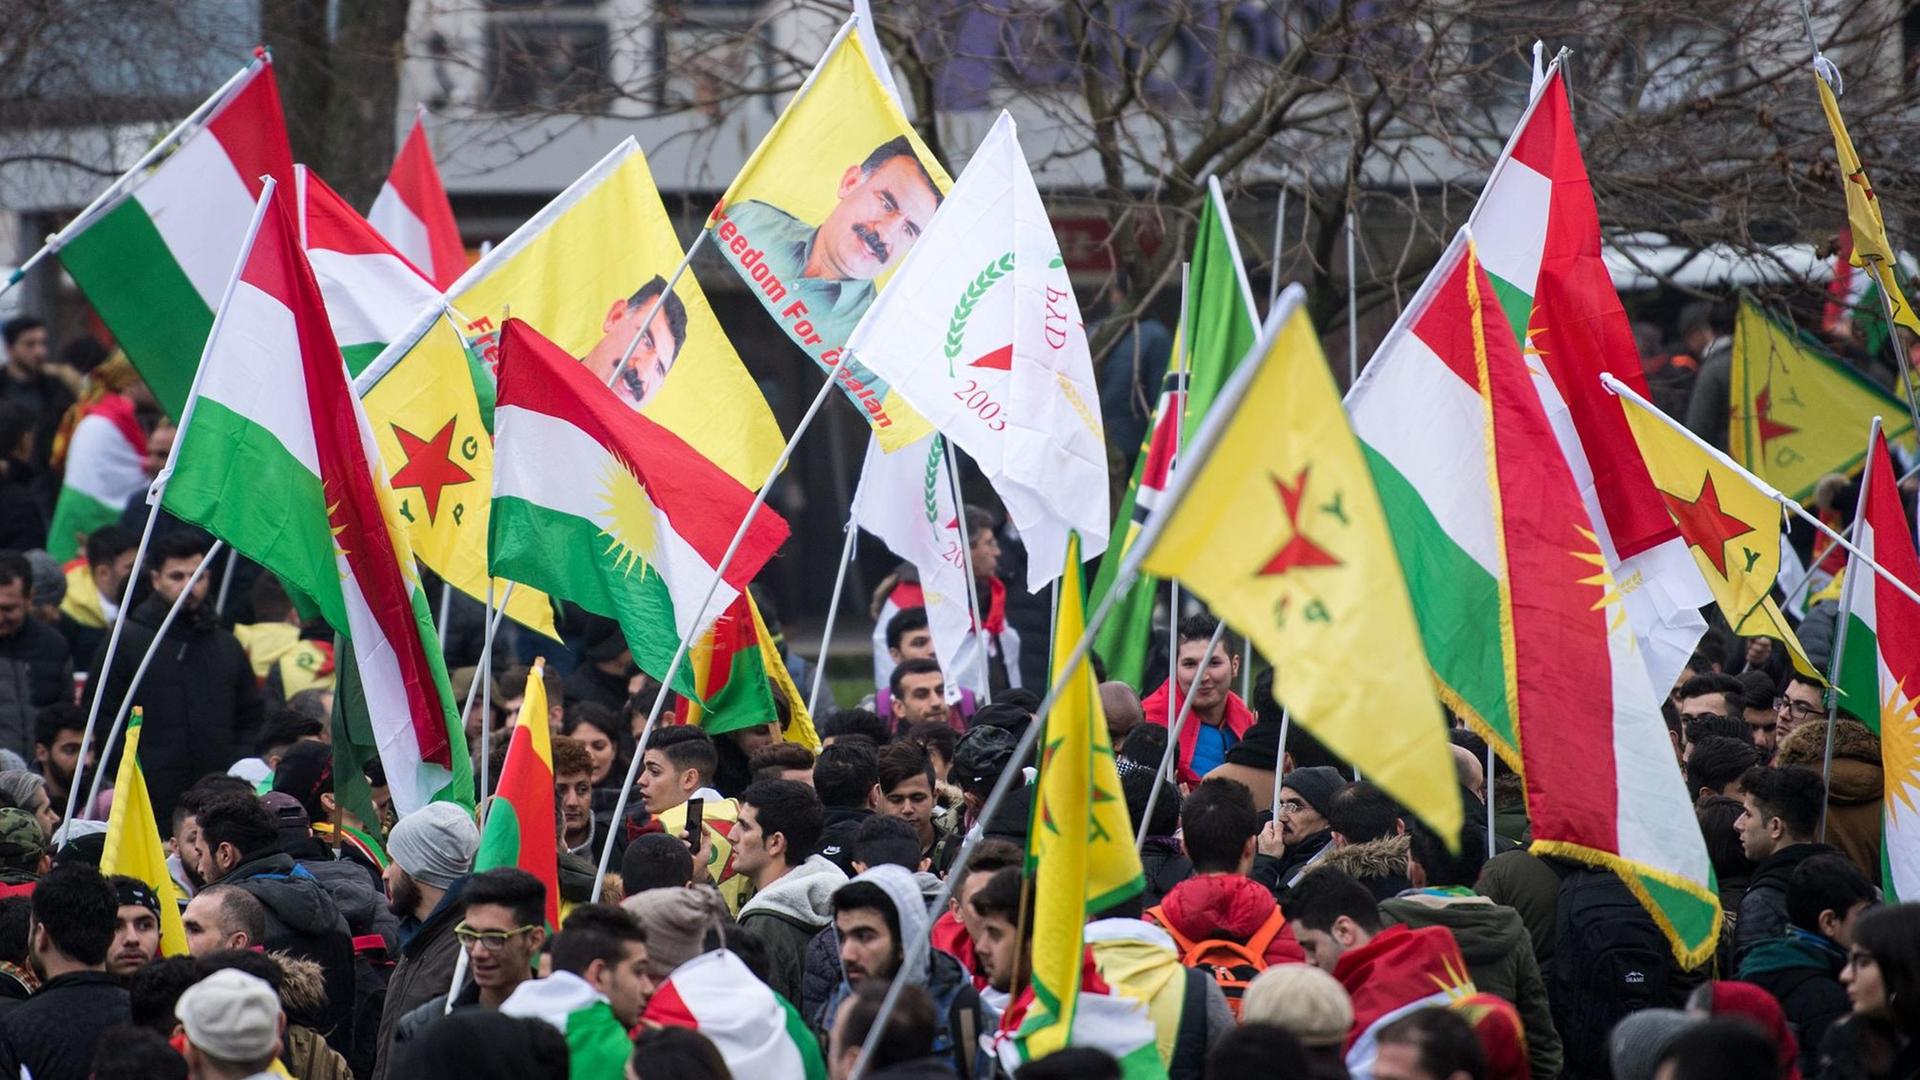 Teilnehmer einer Kurden-Demo gegen die türkische Militäroffensive in Nordsyrien versammeln sich am 27.01.2018 in Köln und halten kurdische Fahnen hoch.